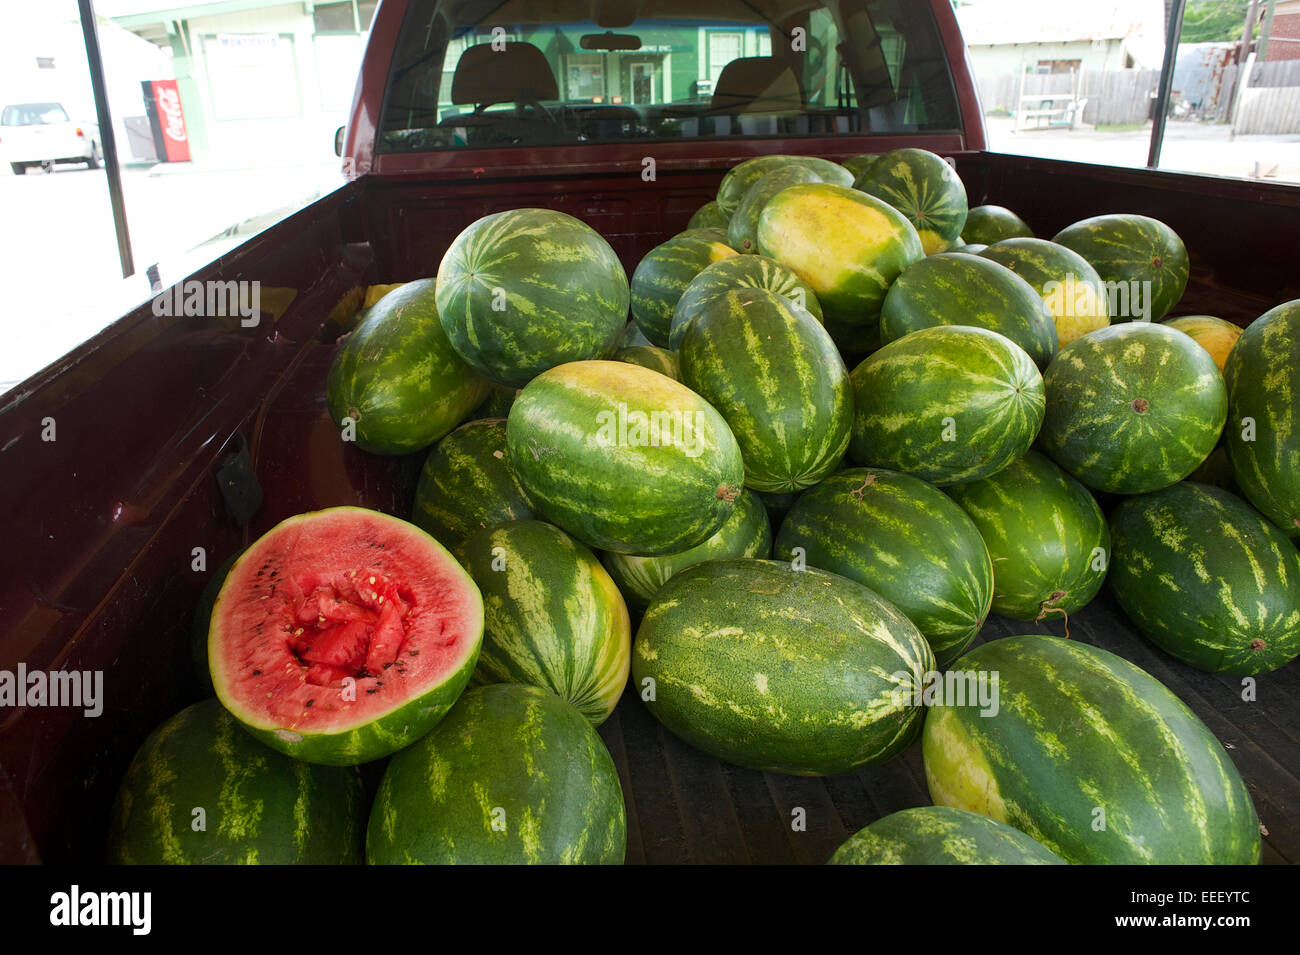 Watermelon vendor Stock Photo